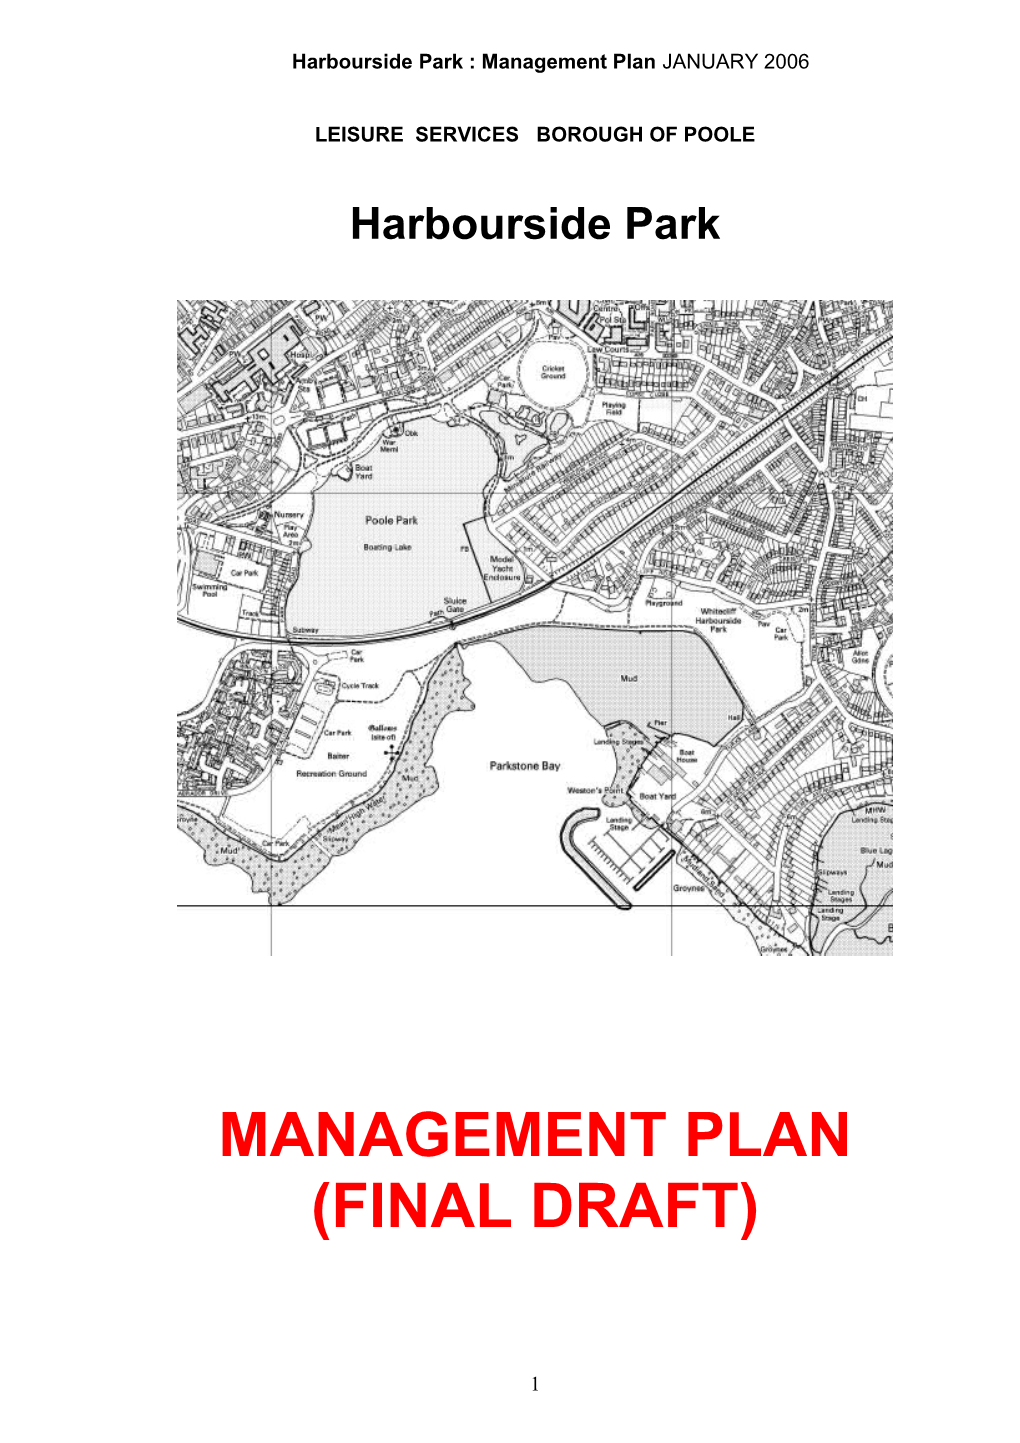 Appendix a to Harbourside Park Management Plan